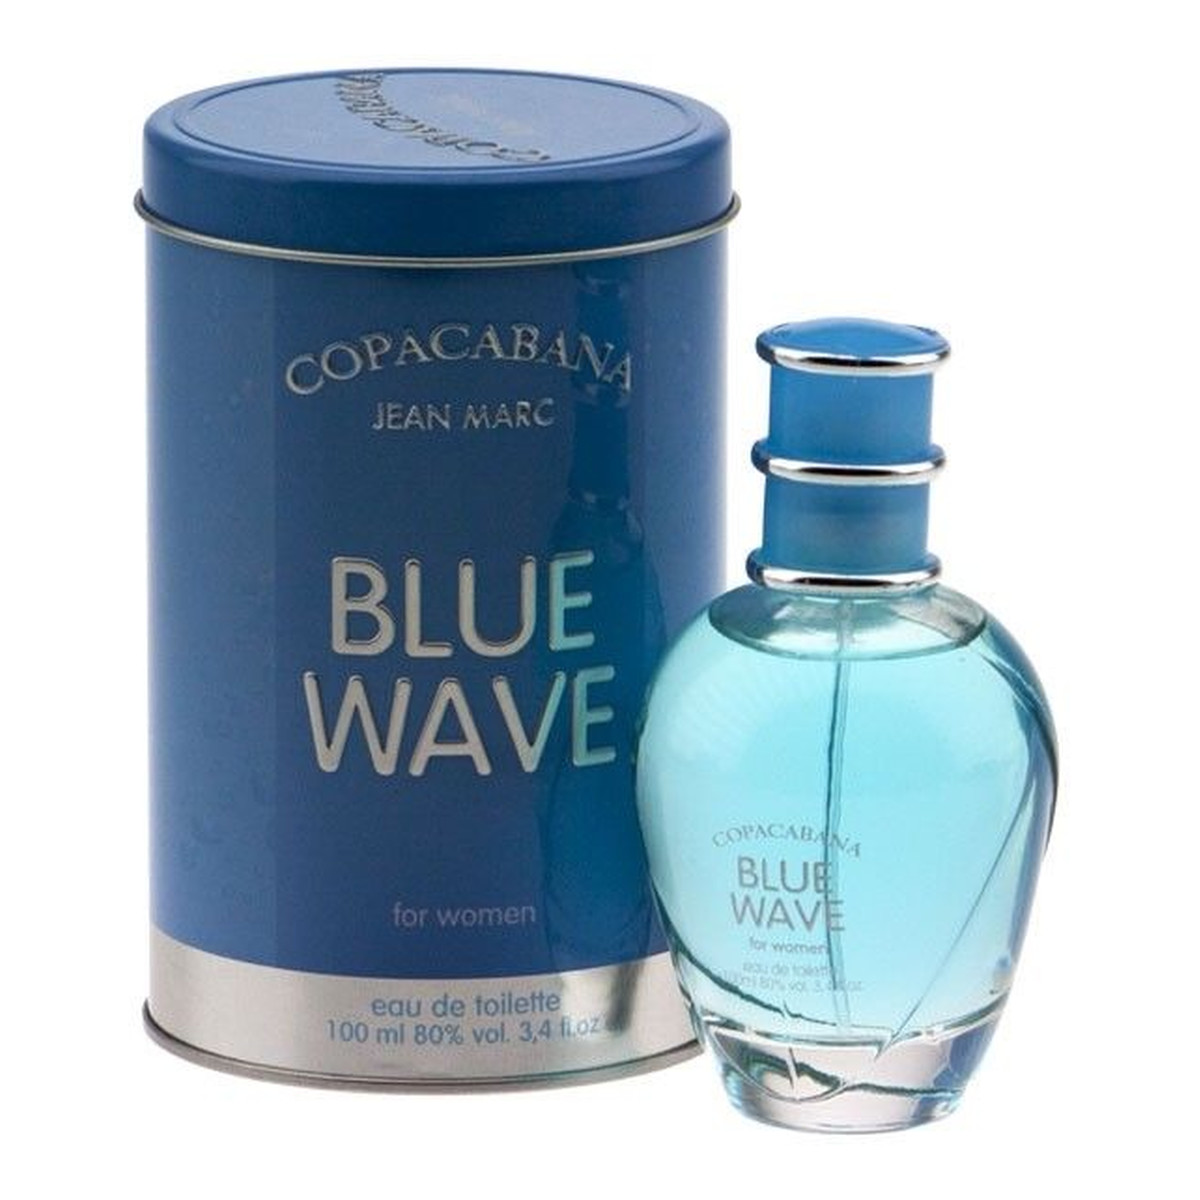 Jean Marc Copacabana Blue Wave woda toaletowa 100ml